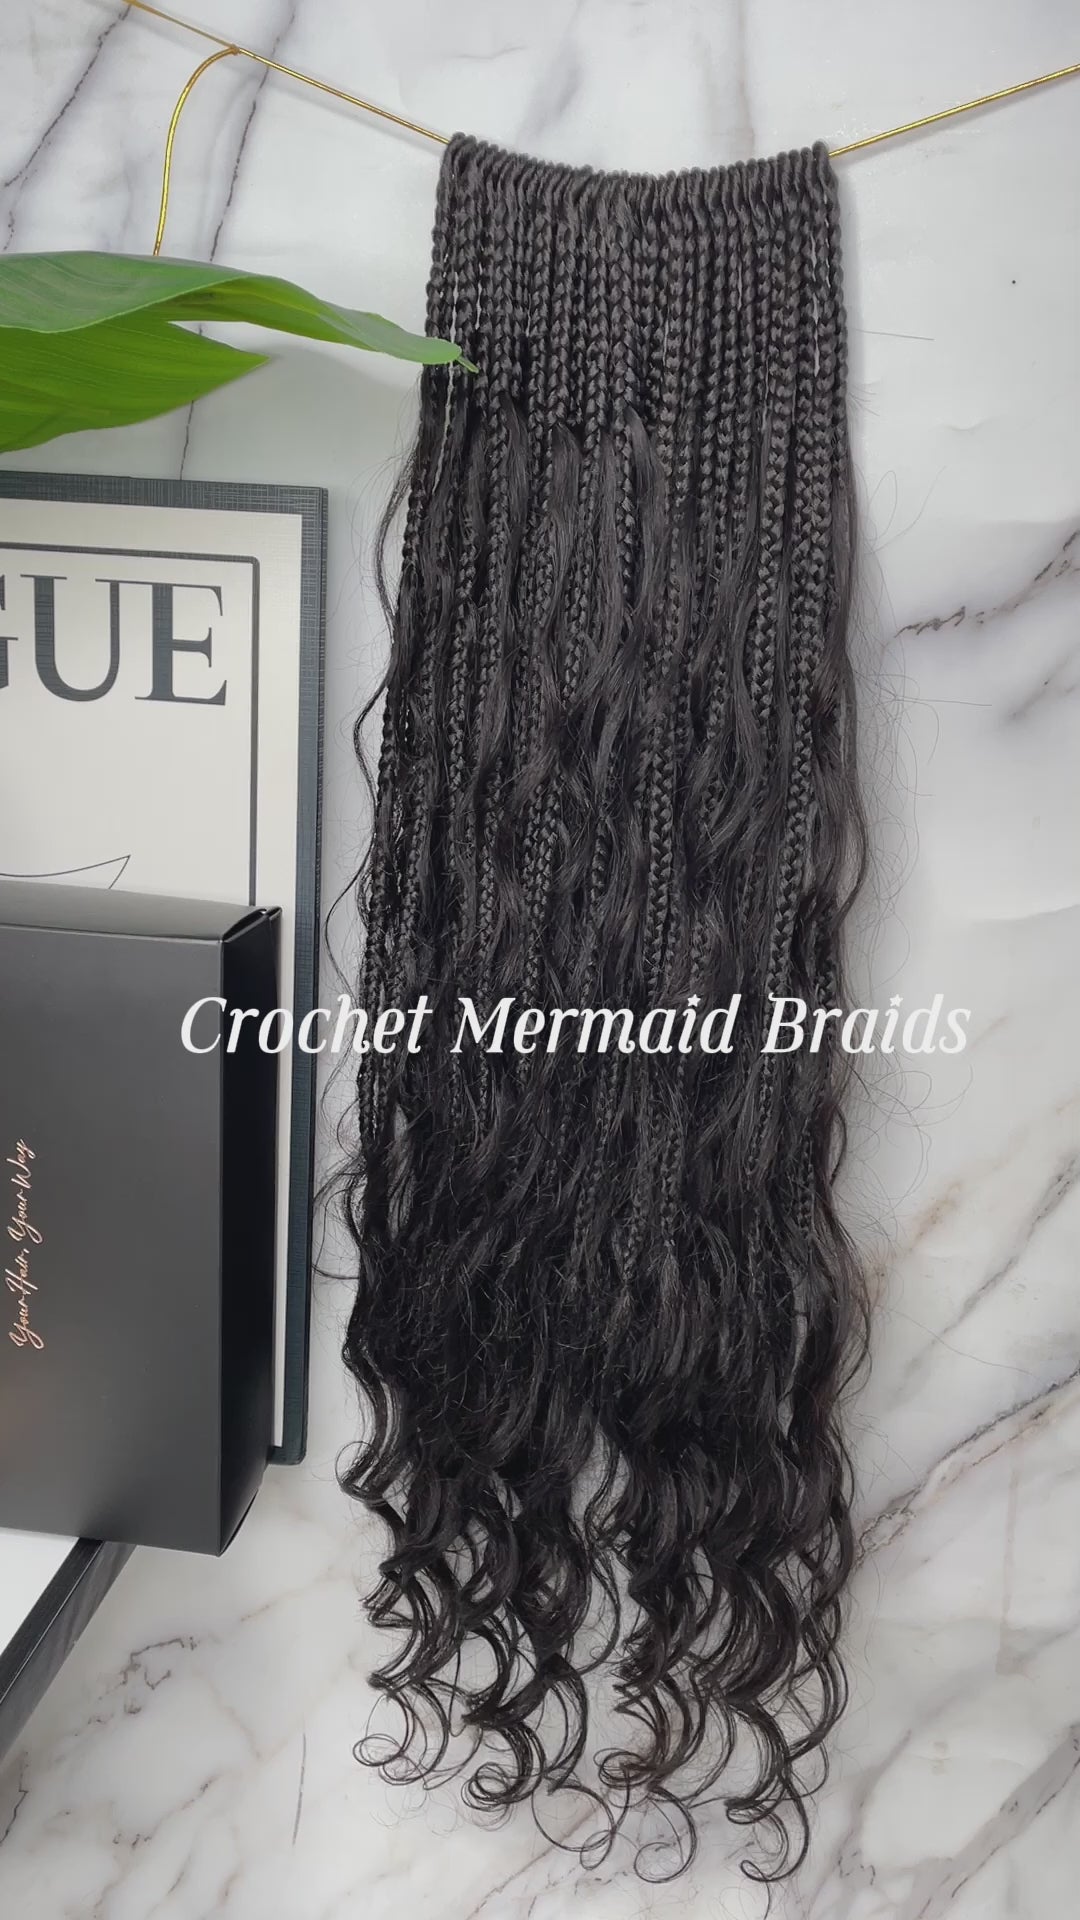 Crochet Mermaid Braids with Loose Wave Human Hair Curls